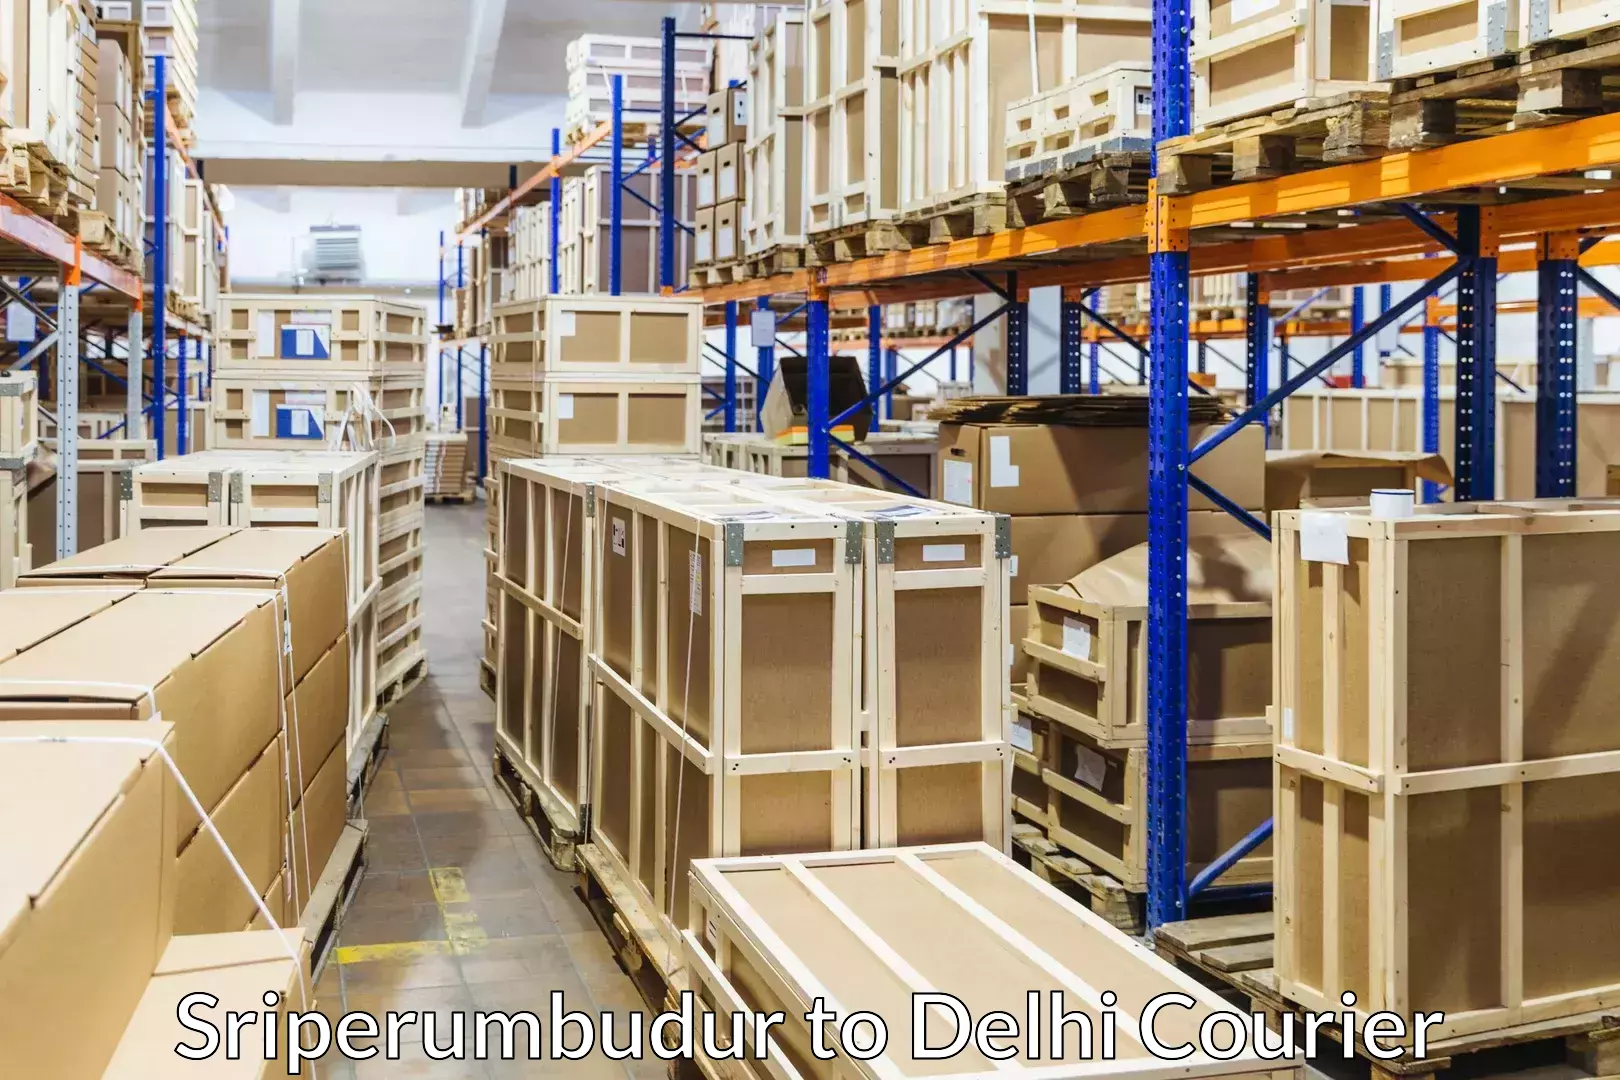 Efficient moving company Sriperumbudur to Delhi